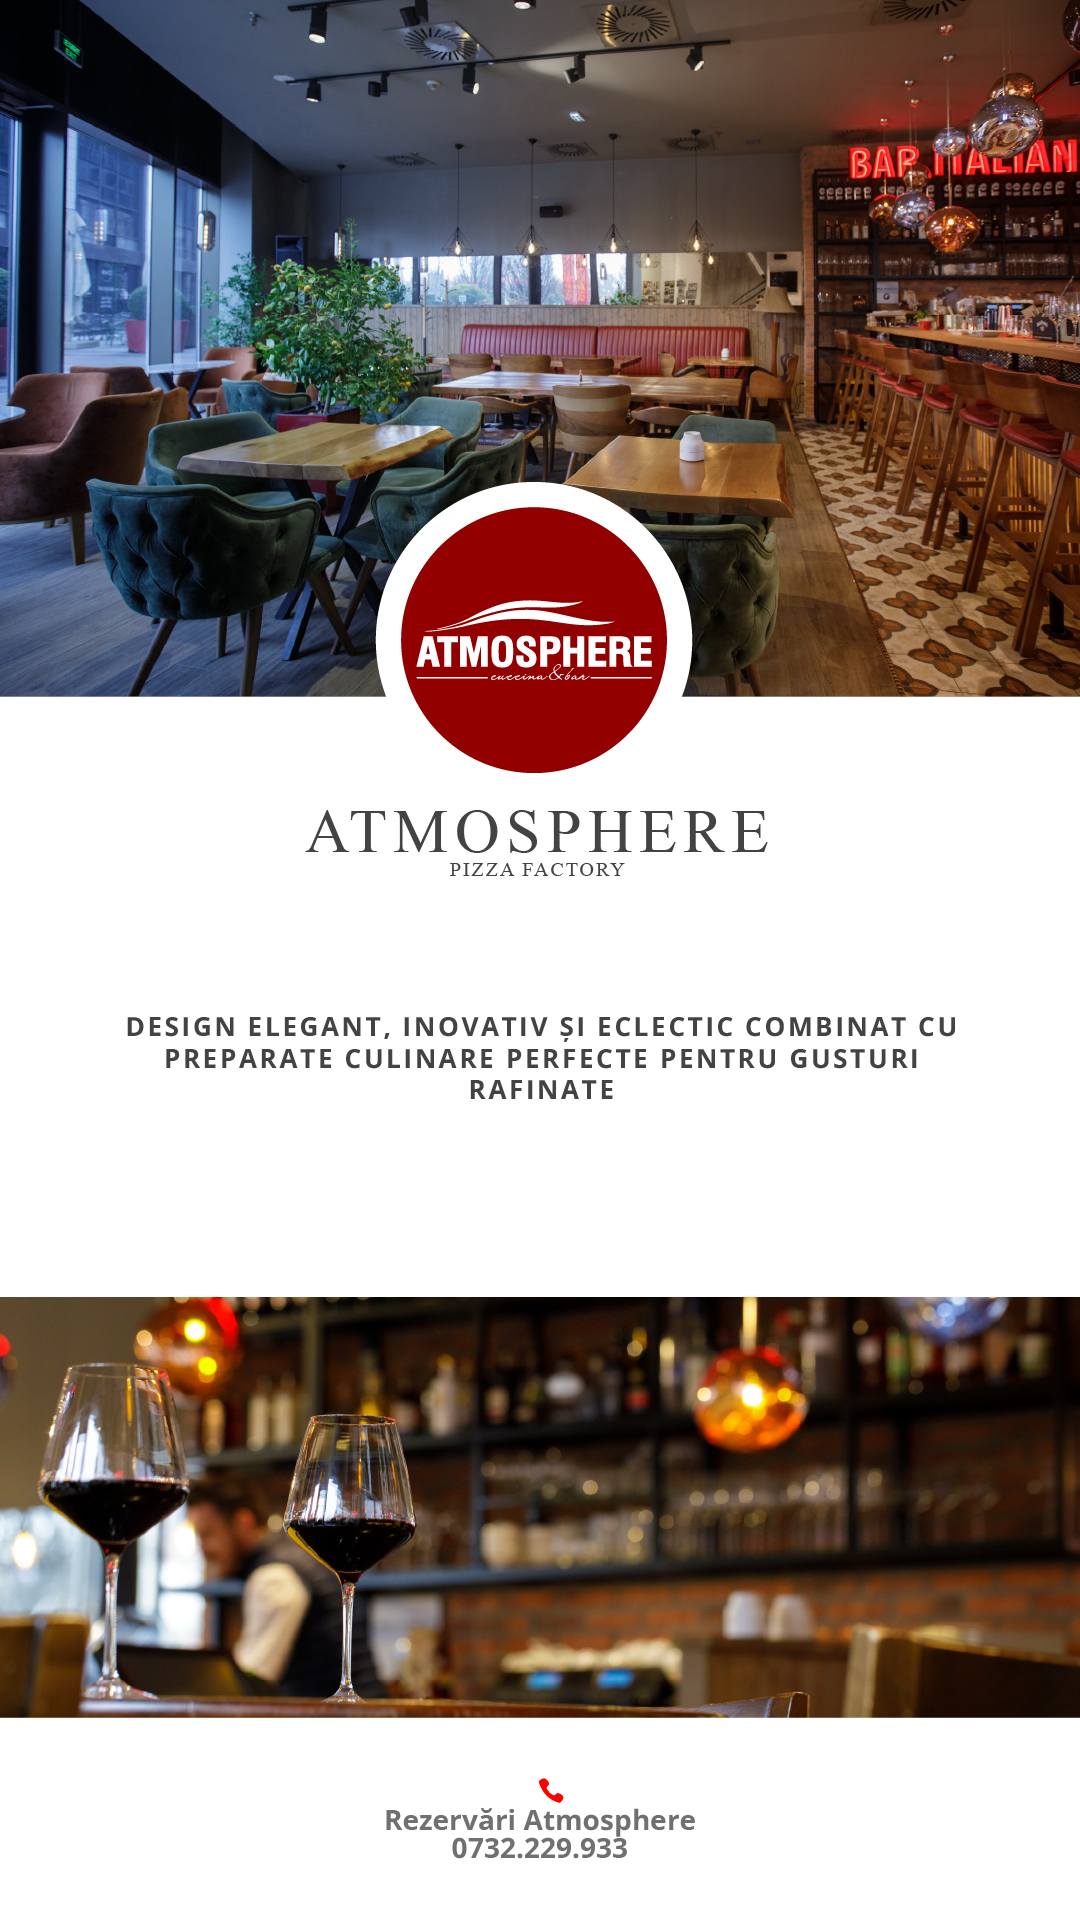 Atmosphere_Totem